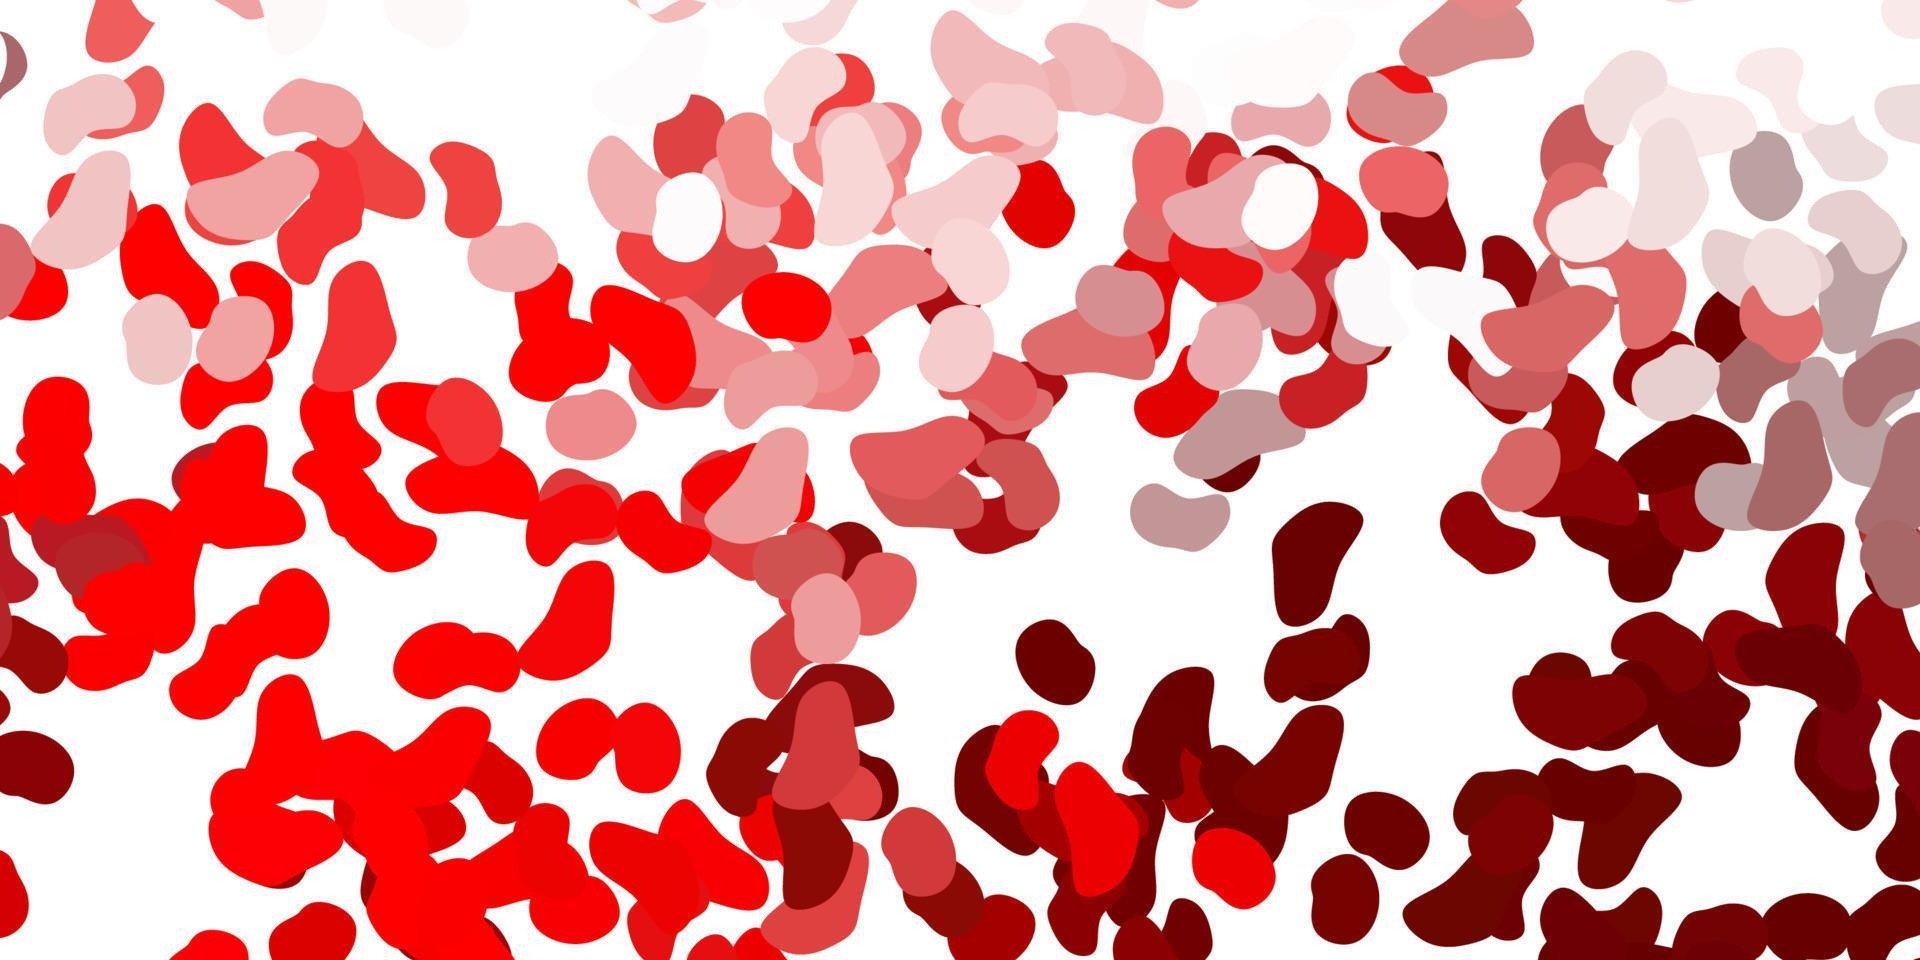 texture de vecteur rouge clair avec des formes de memphis.